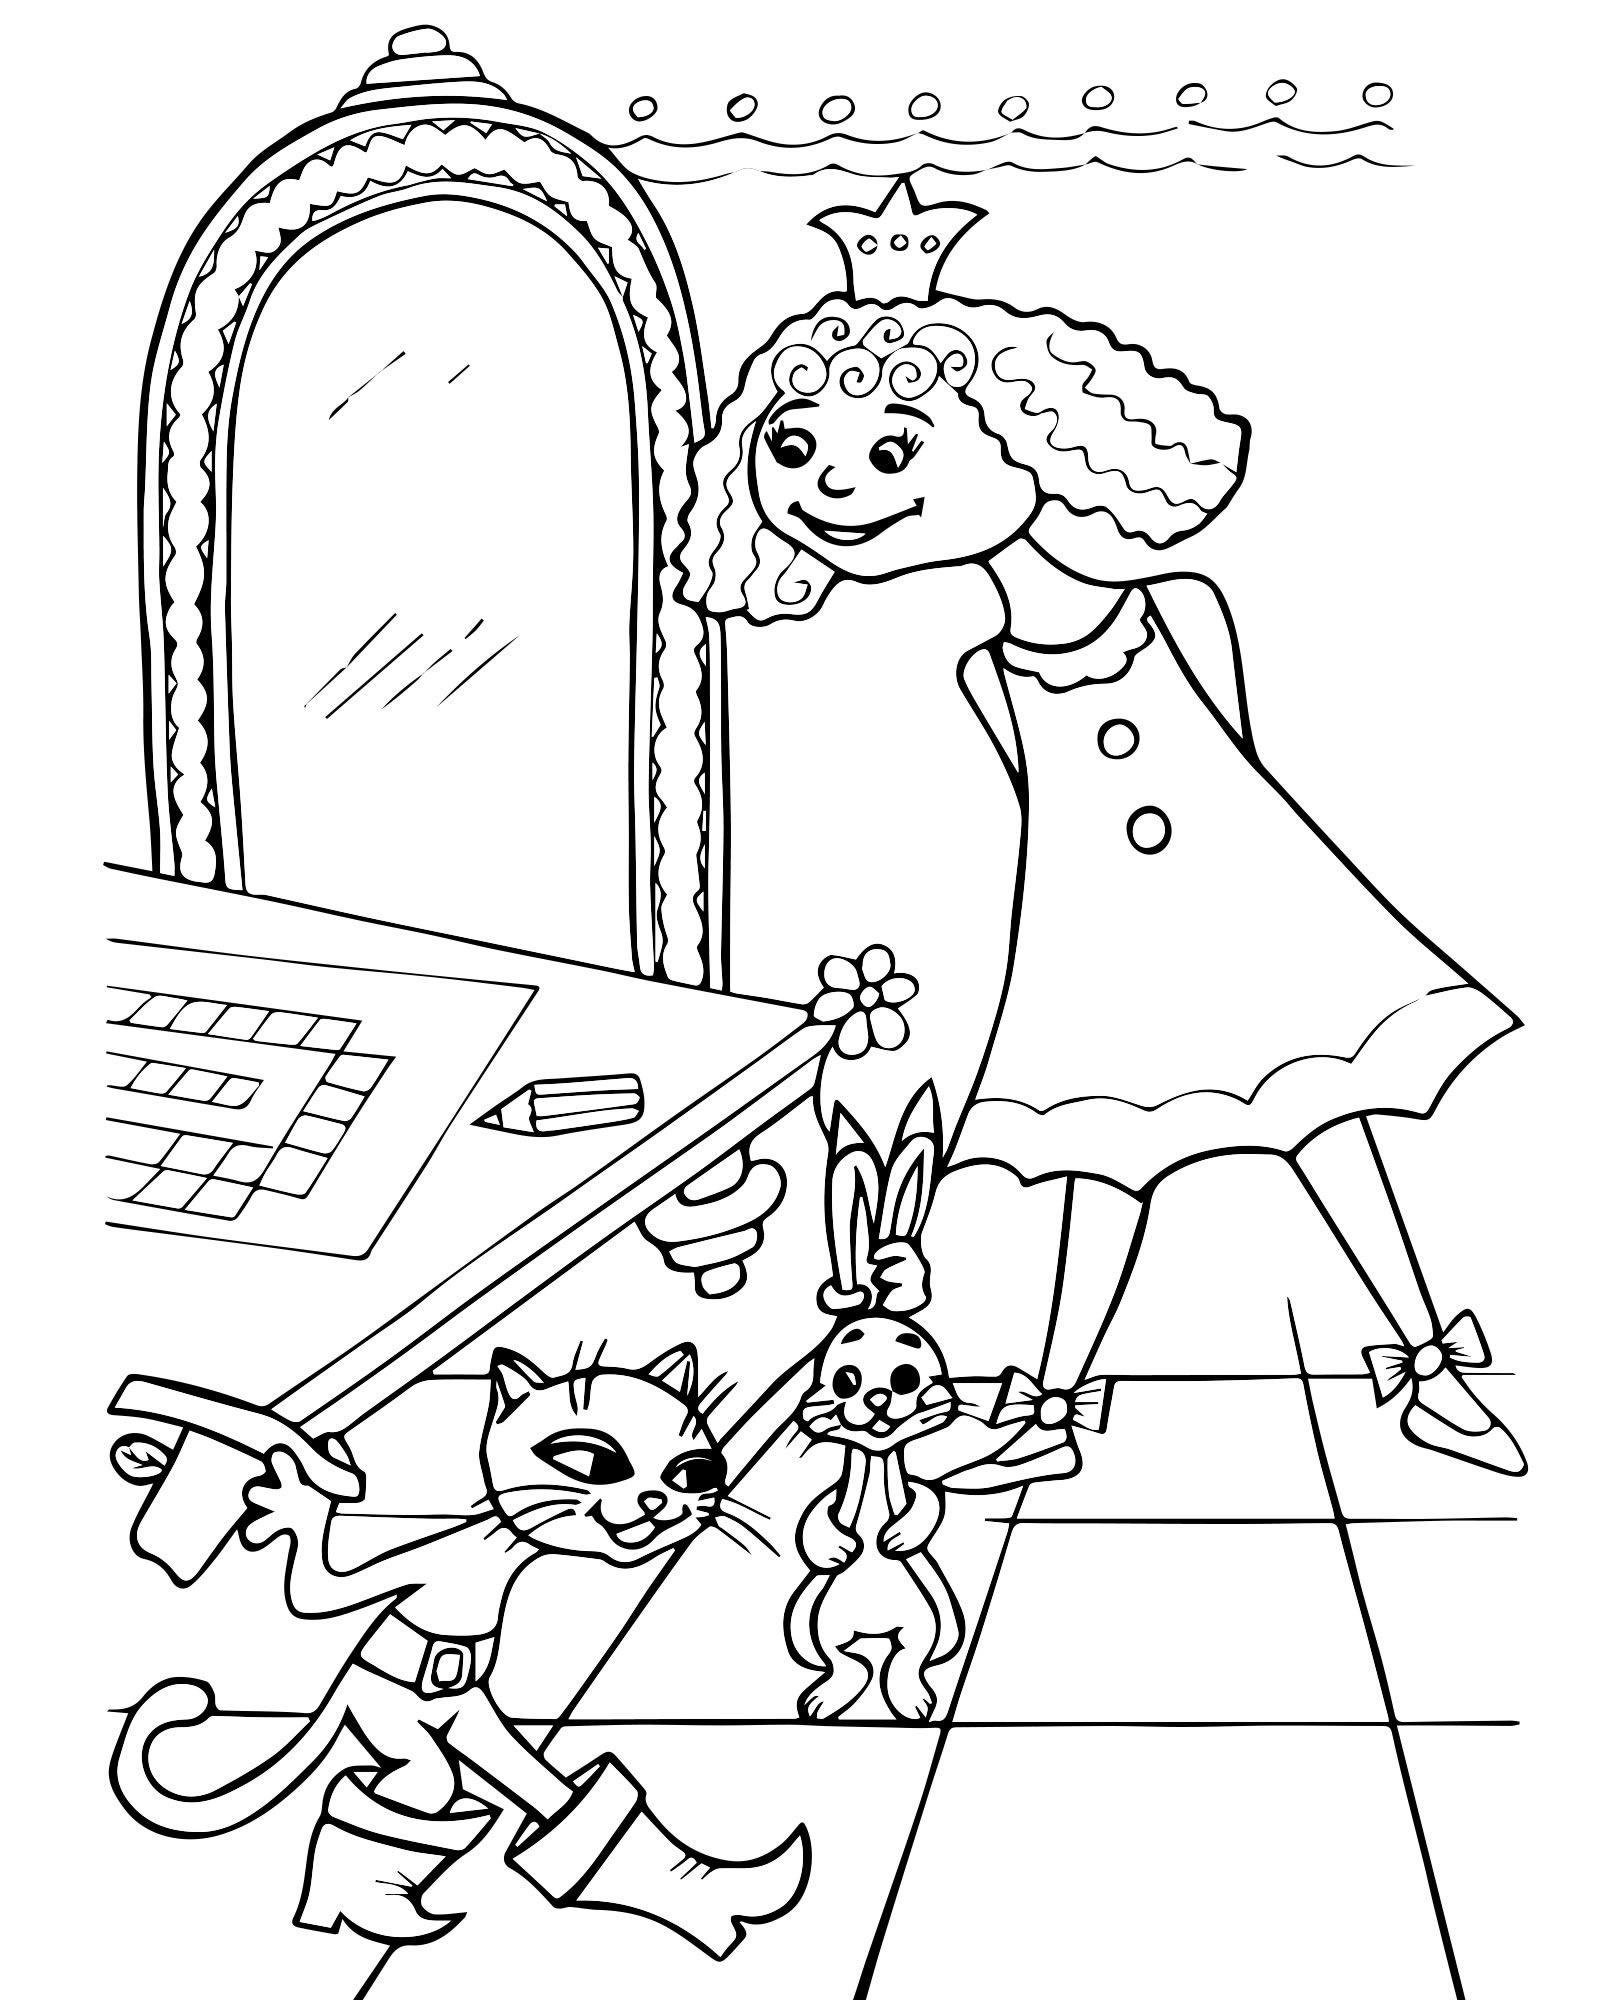 Кот в сапогах и принцесса раскраска для детей